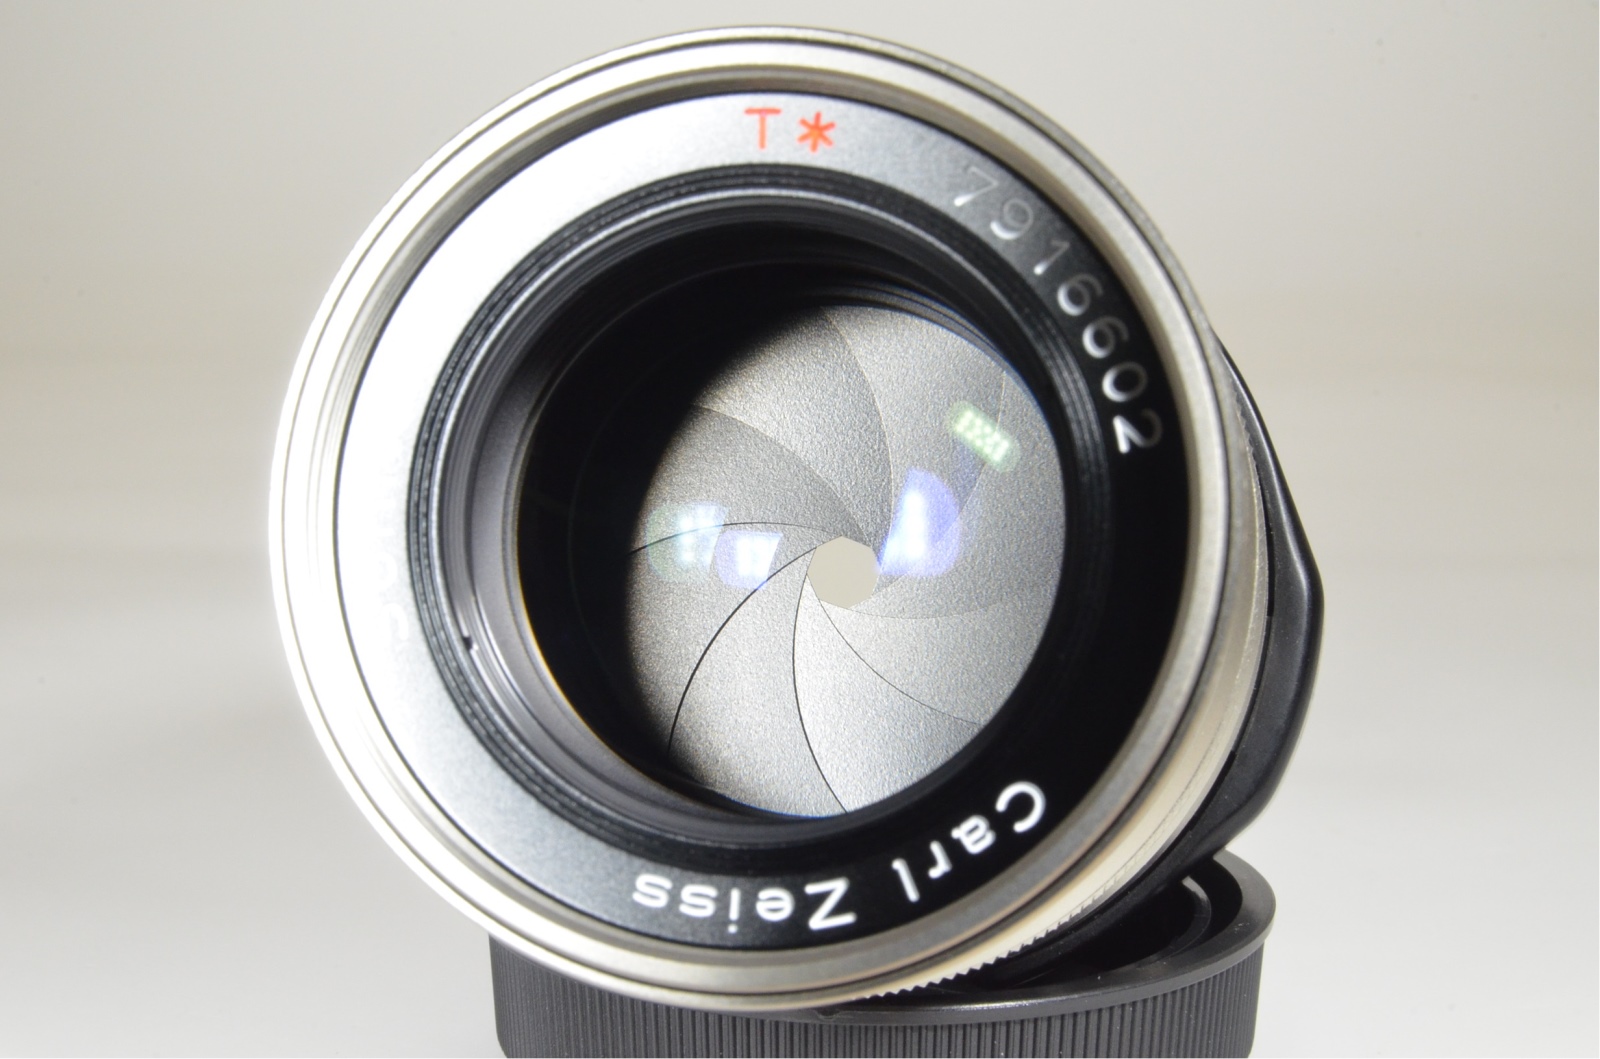 contax g2 camera with planar 45mm f2, biogon 28mm f2.8, sonnar 90mm f2.8, tla200